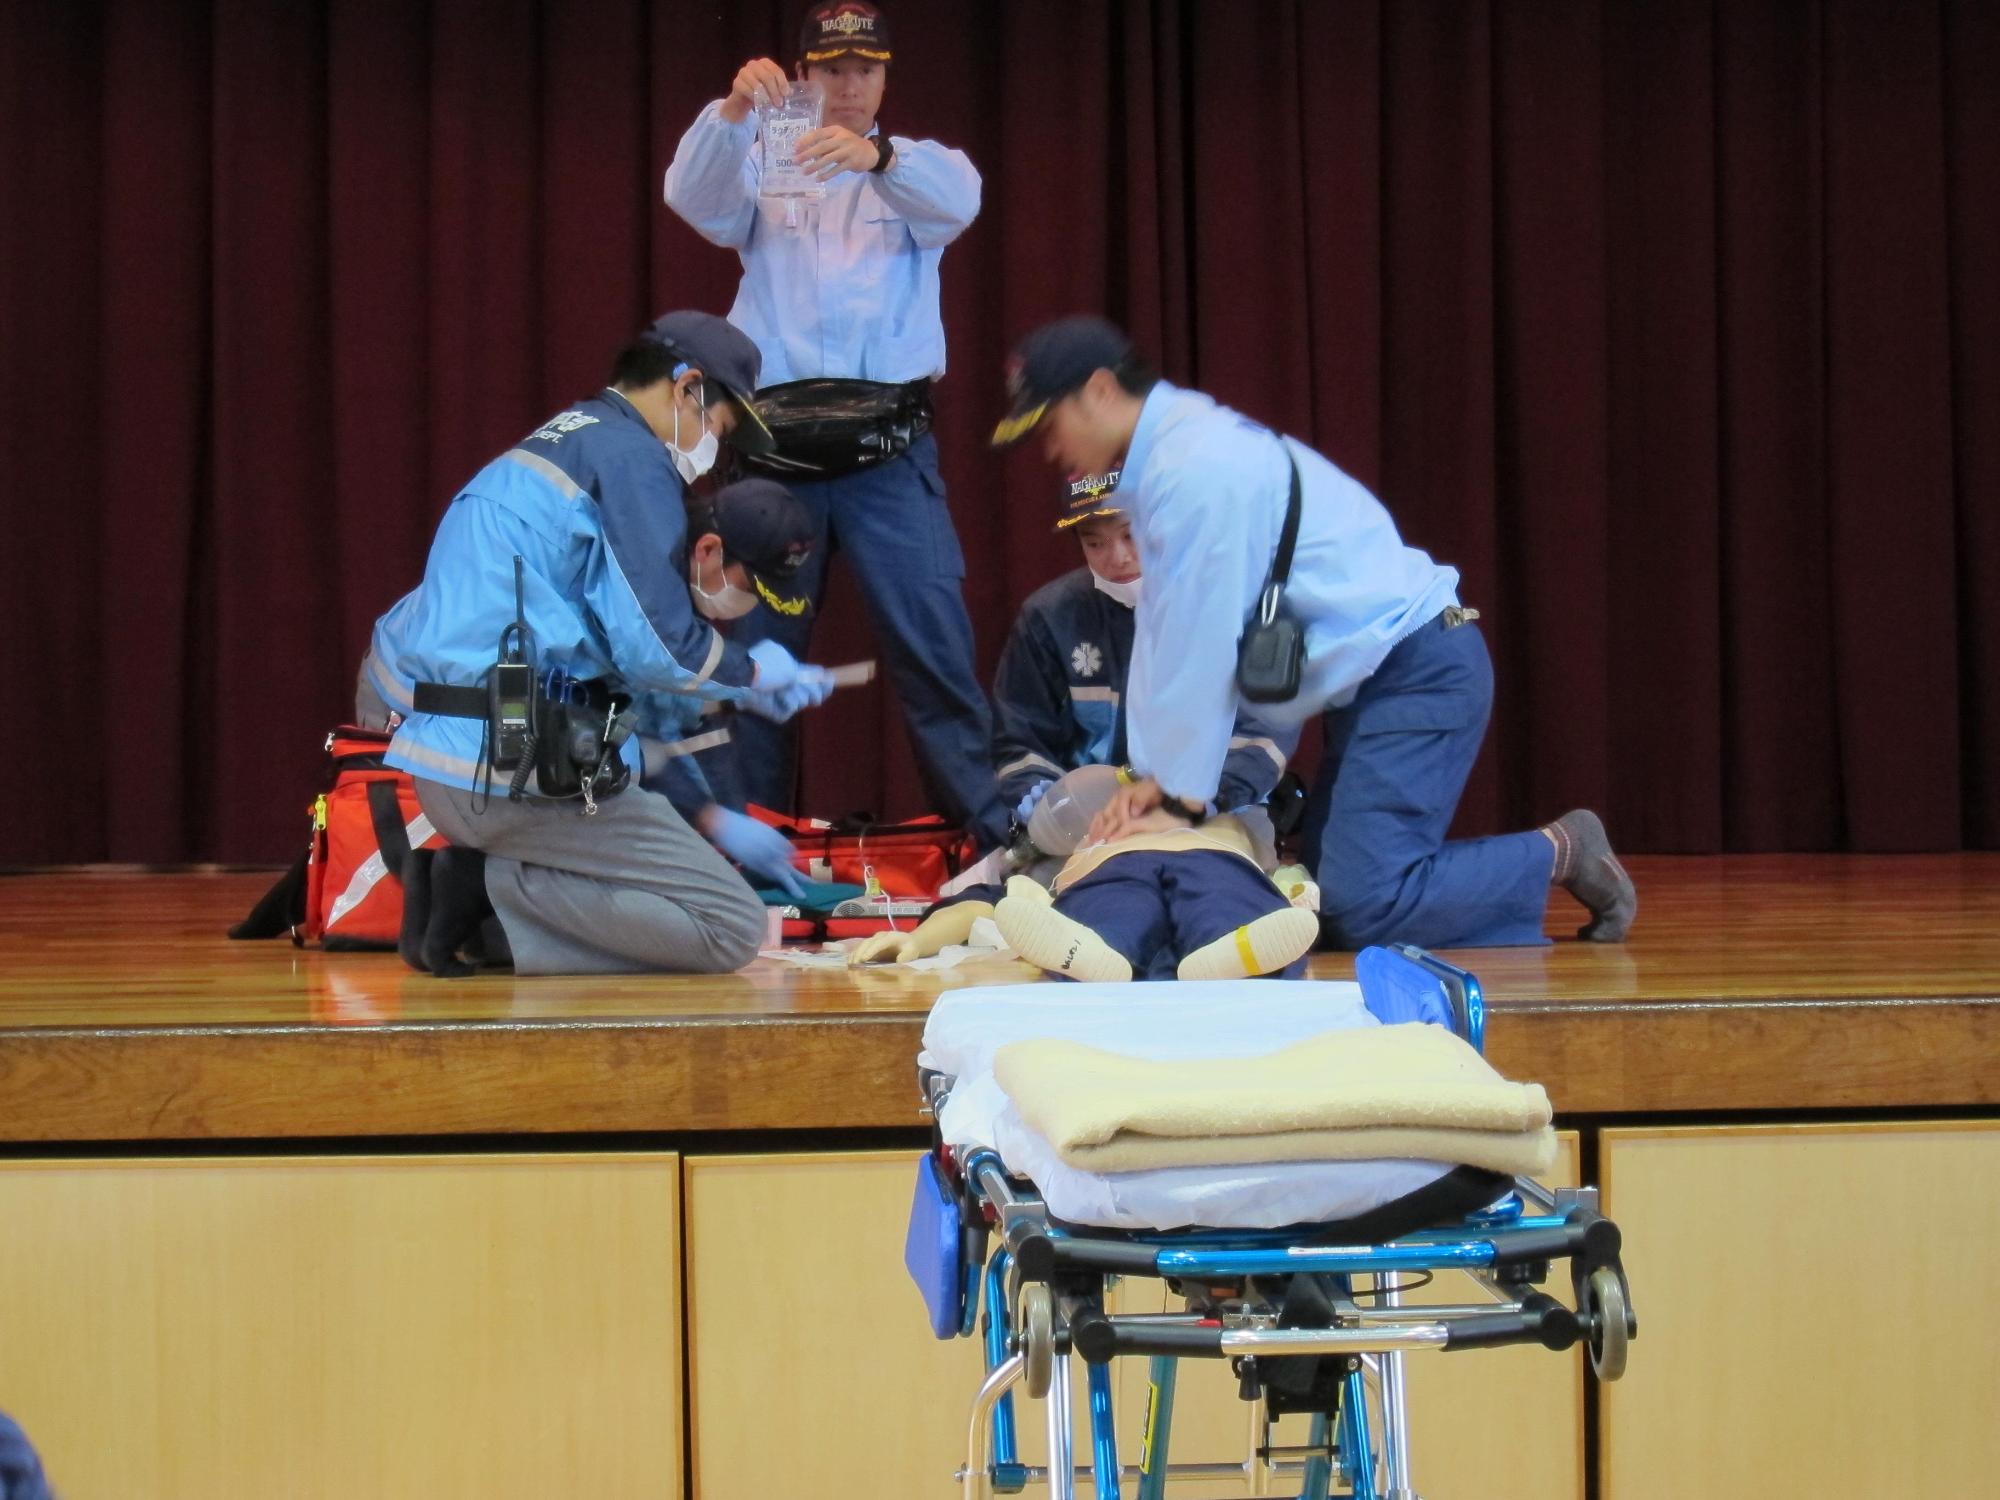 体育館のステージで人形を使って消防署員による救急活動訓練が行われている前に担架が置いてある写真